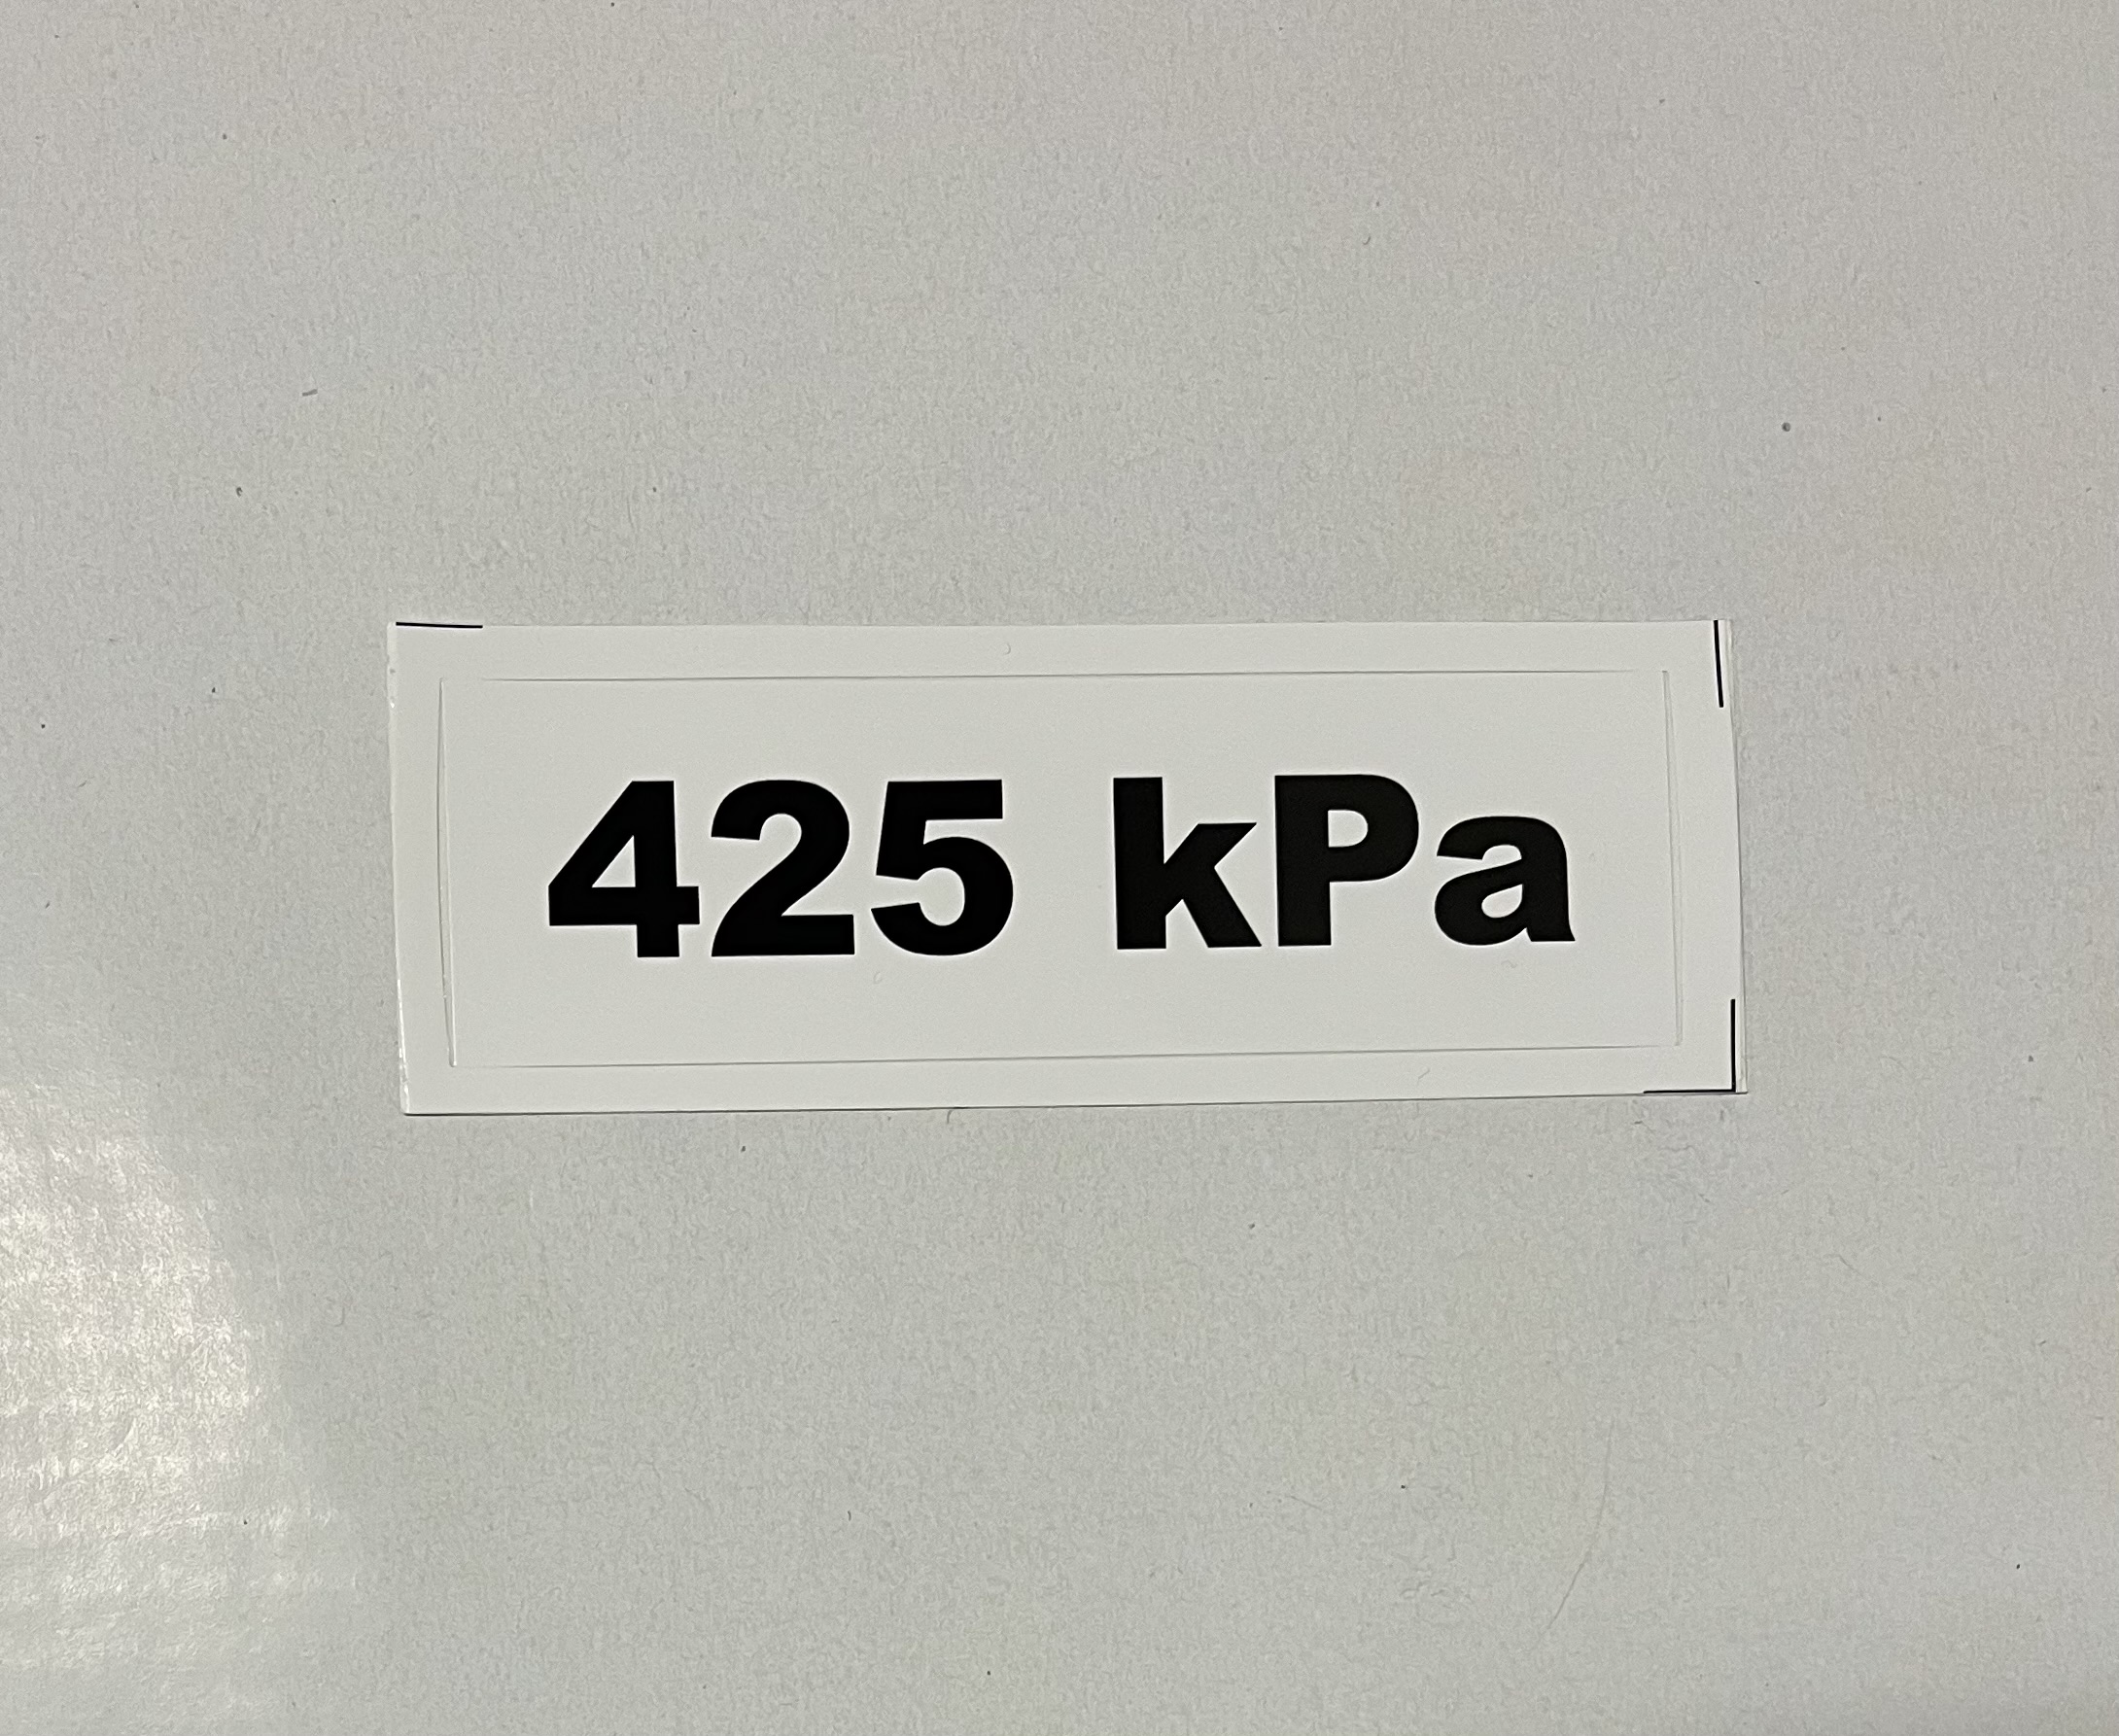 Označenie kPa 425